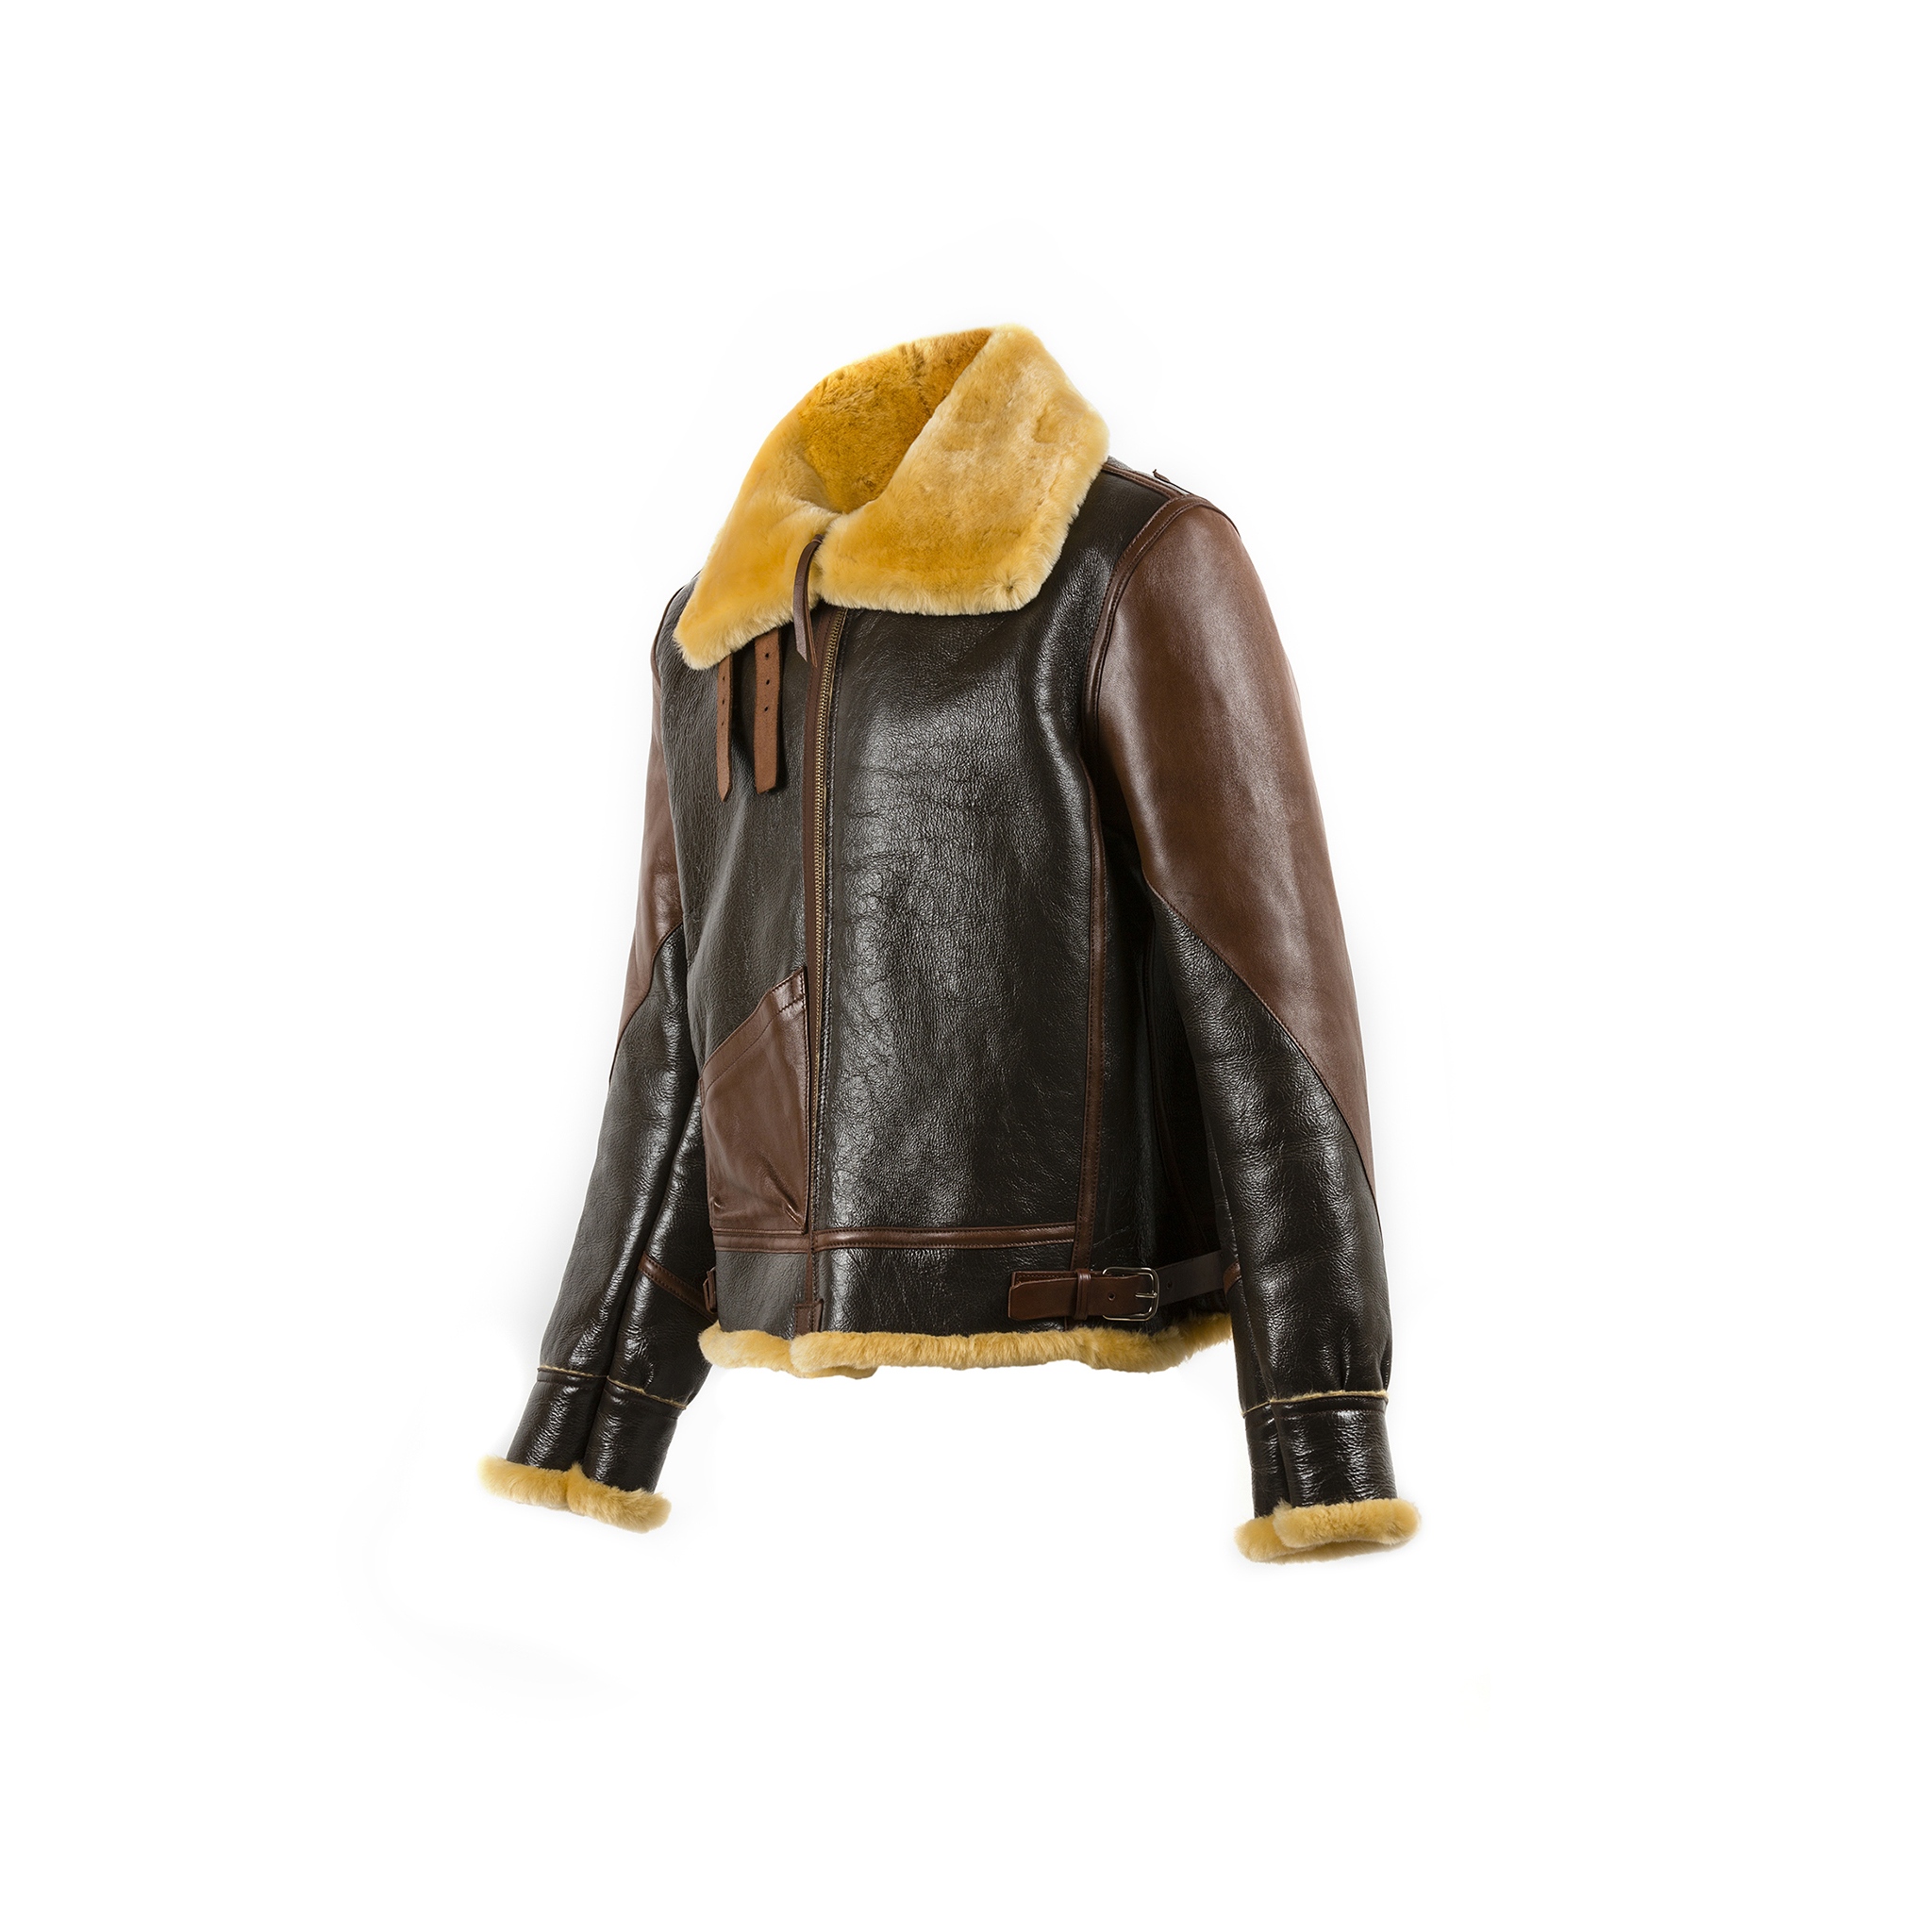 B3 Jacket - Varnished shearling - Gold color